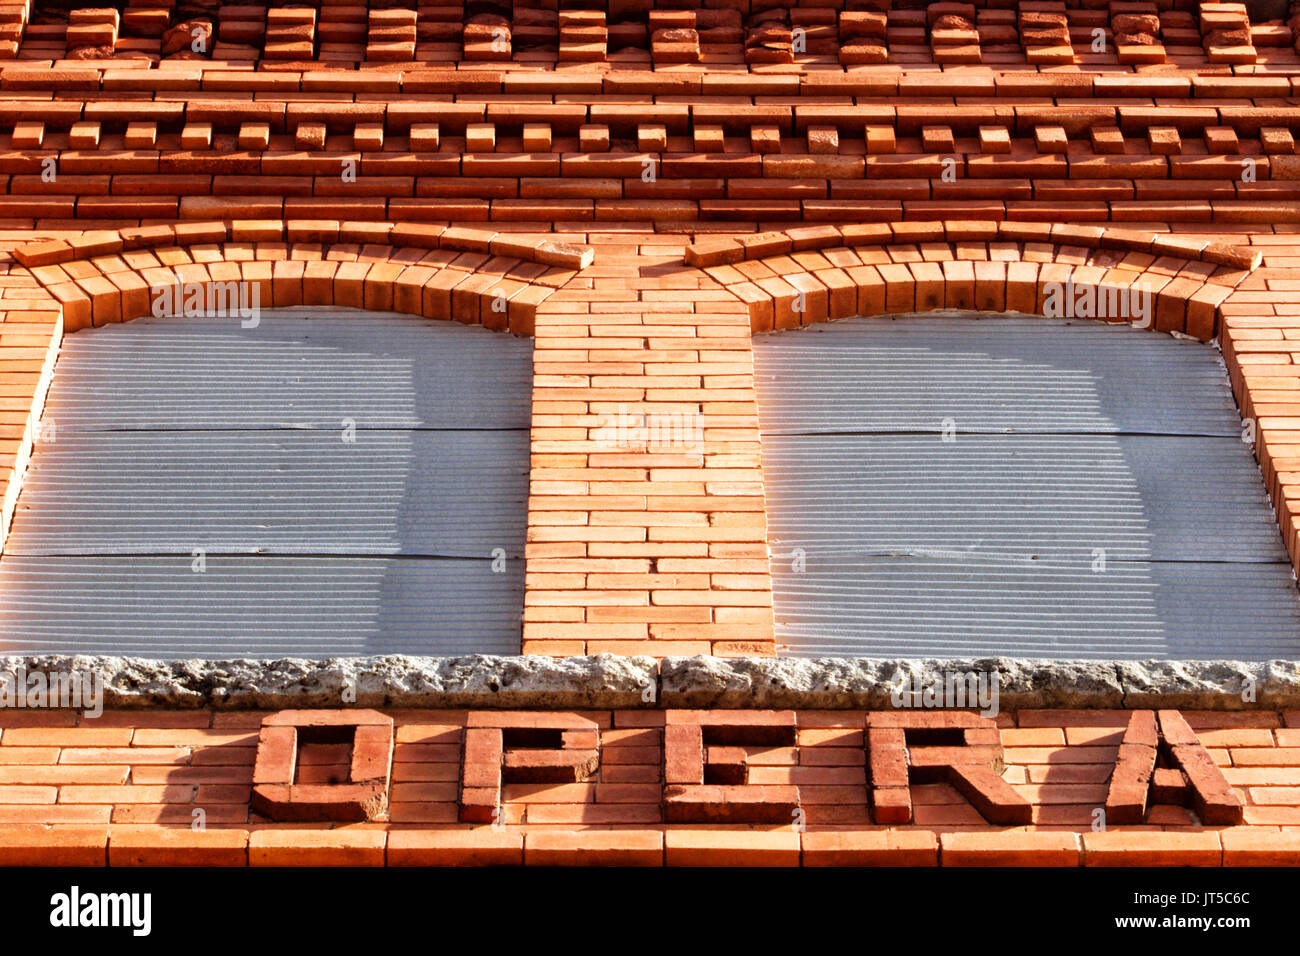 Una vista in dettaglio di un laterizio Opera House edificio che mostra due finestre e la parola "Opera". Foto Stock